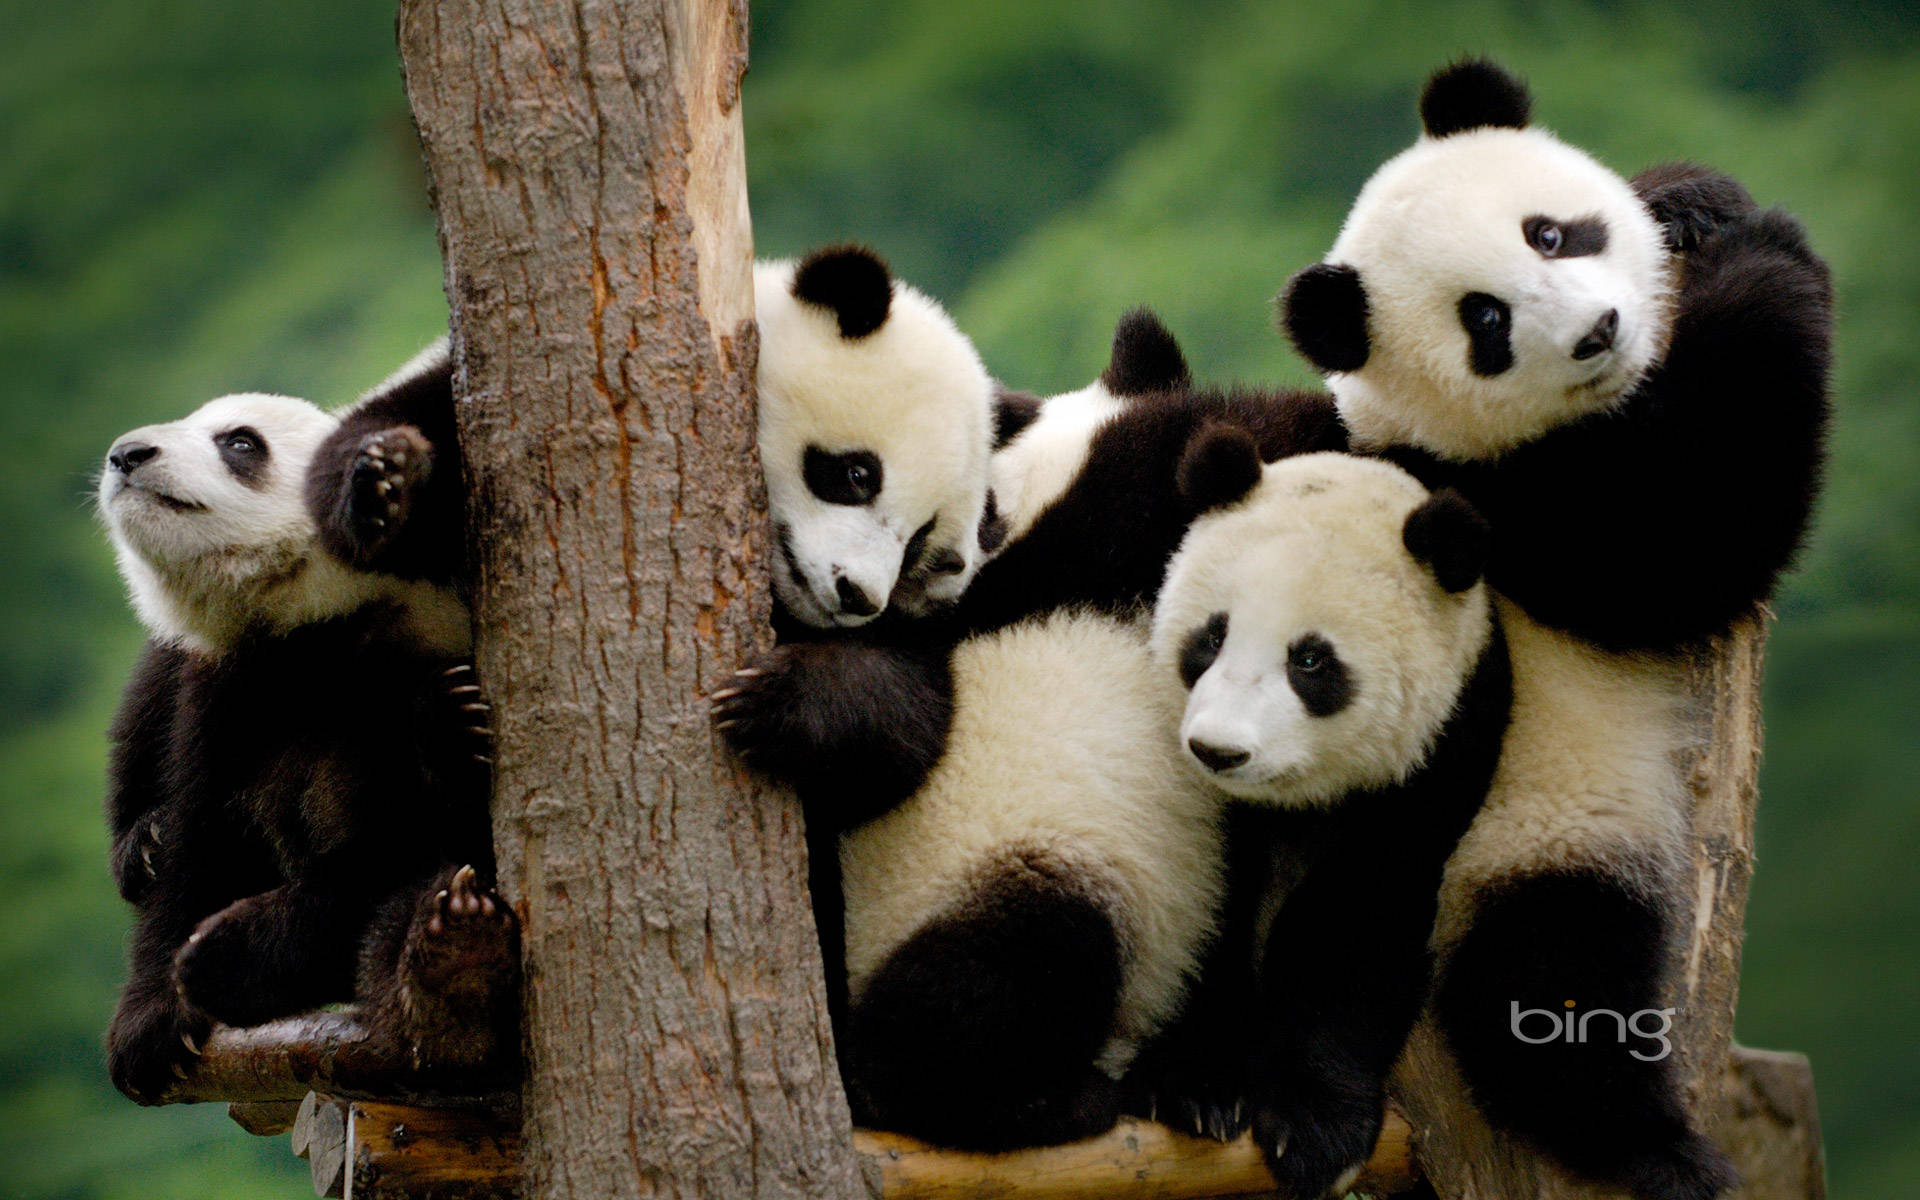 Group of pandas image wallpaper.